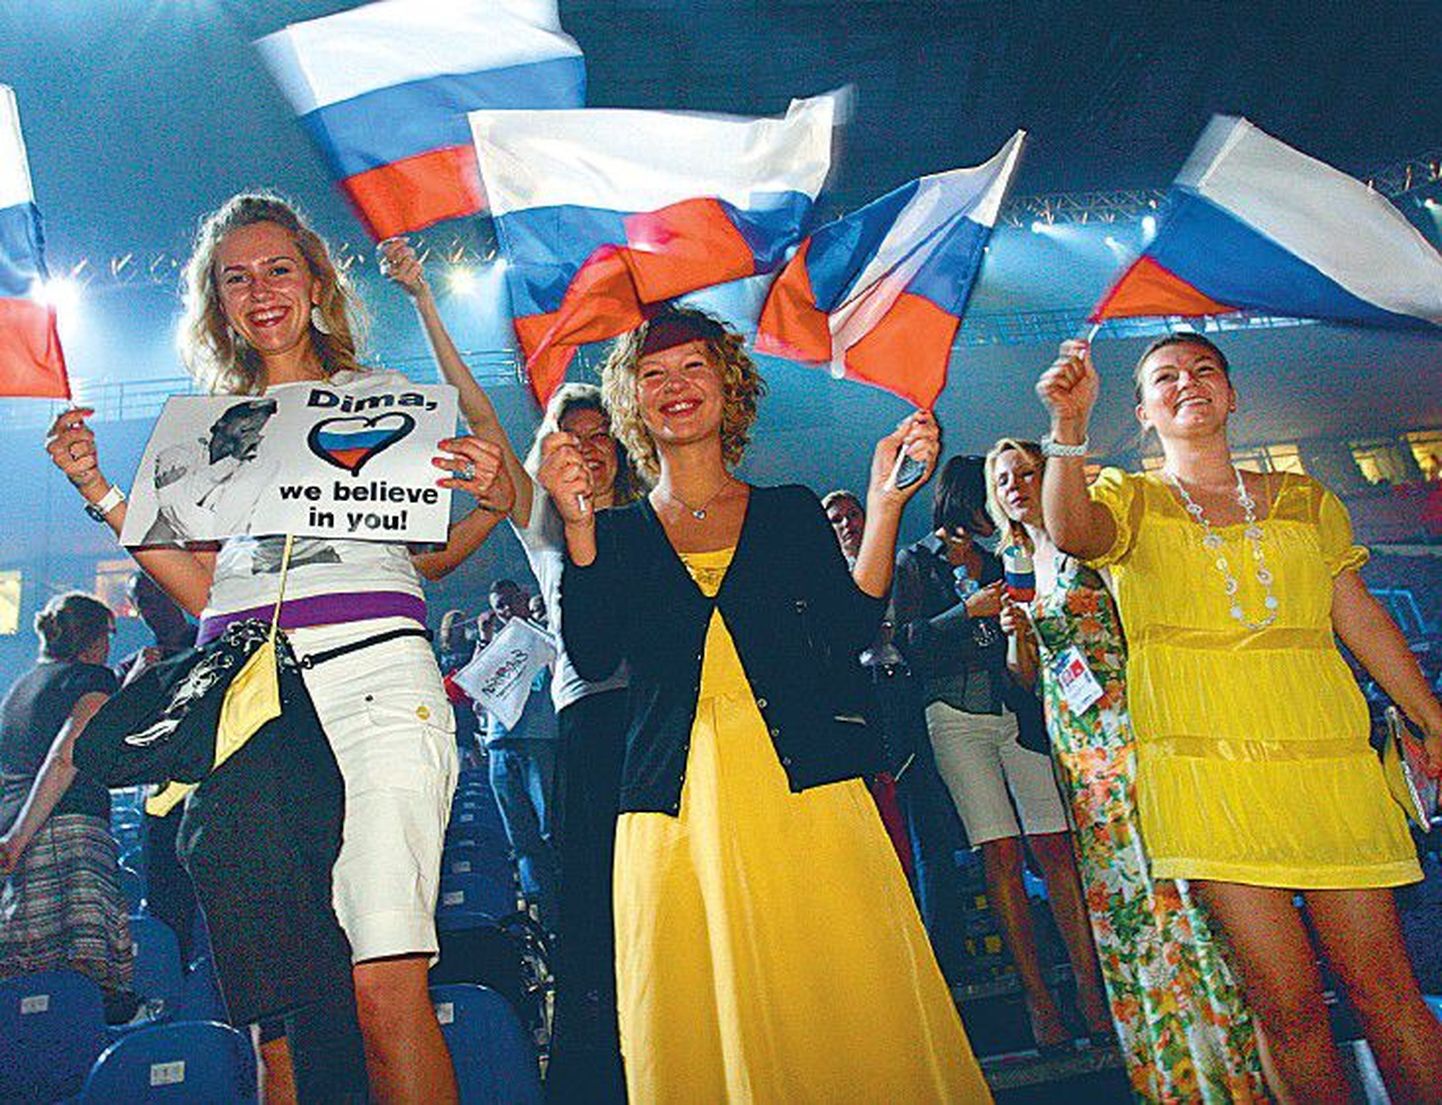 Tänavu kevadel võidutses Serbia pealinnas Belgradis Eurovisioonil Venemaa esindaja Dima Bilan, nii langes järgmise aasta Eurovisiooni lauluvõistluse korraldamise au Moskvale. Pildil juubeldavad Dima Bilani fännid.